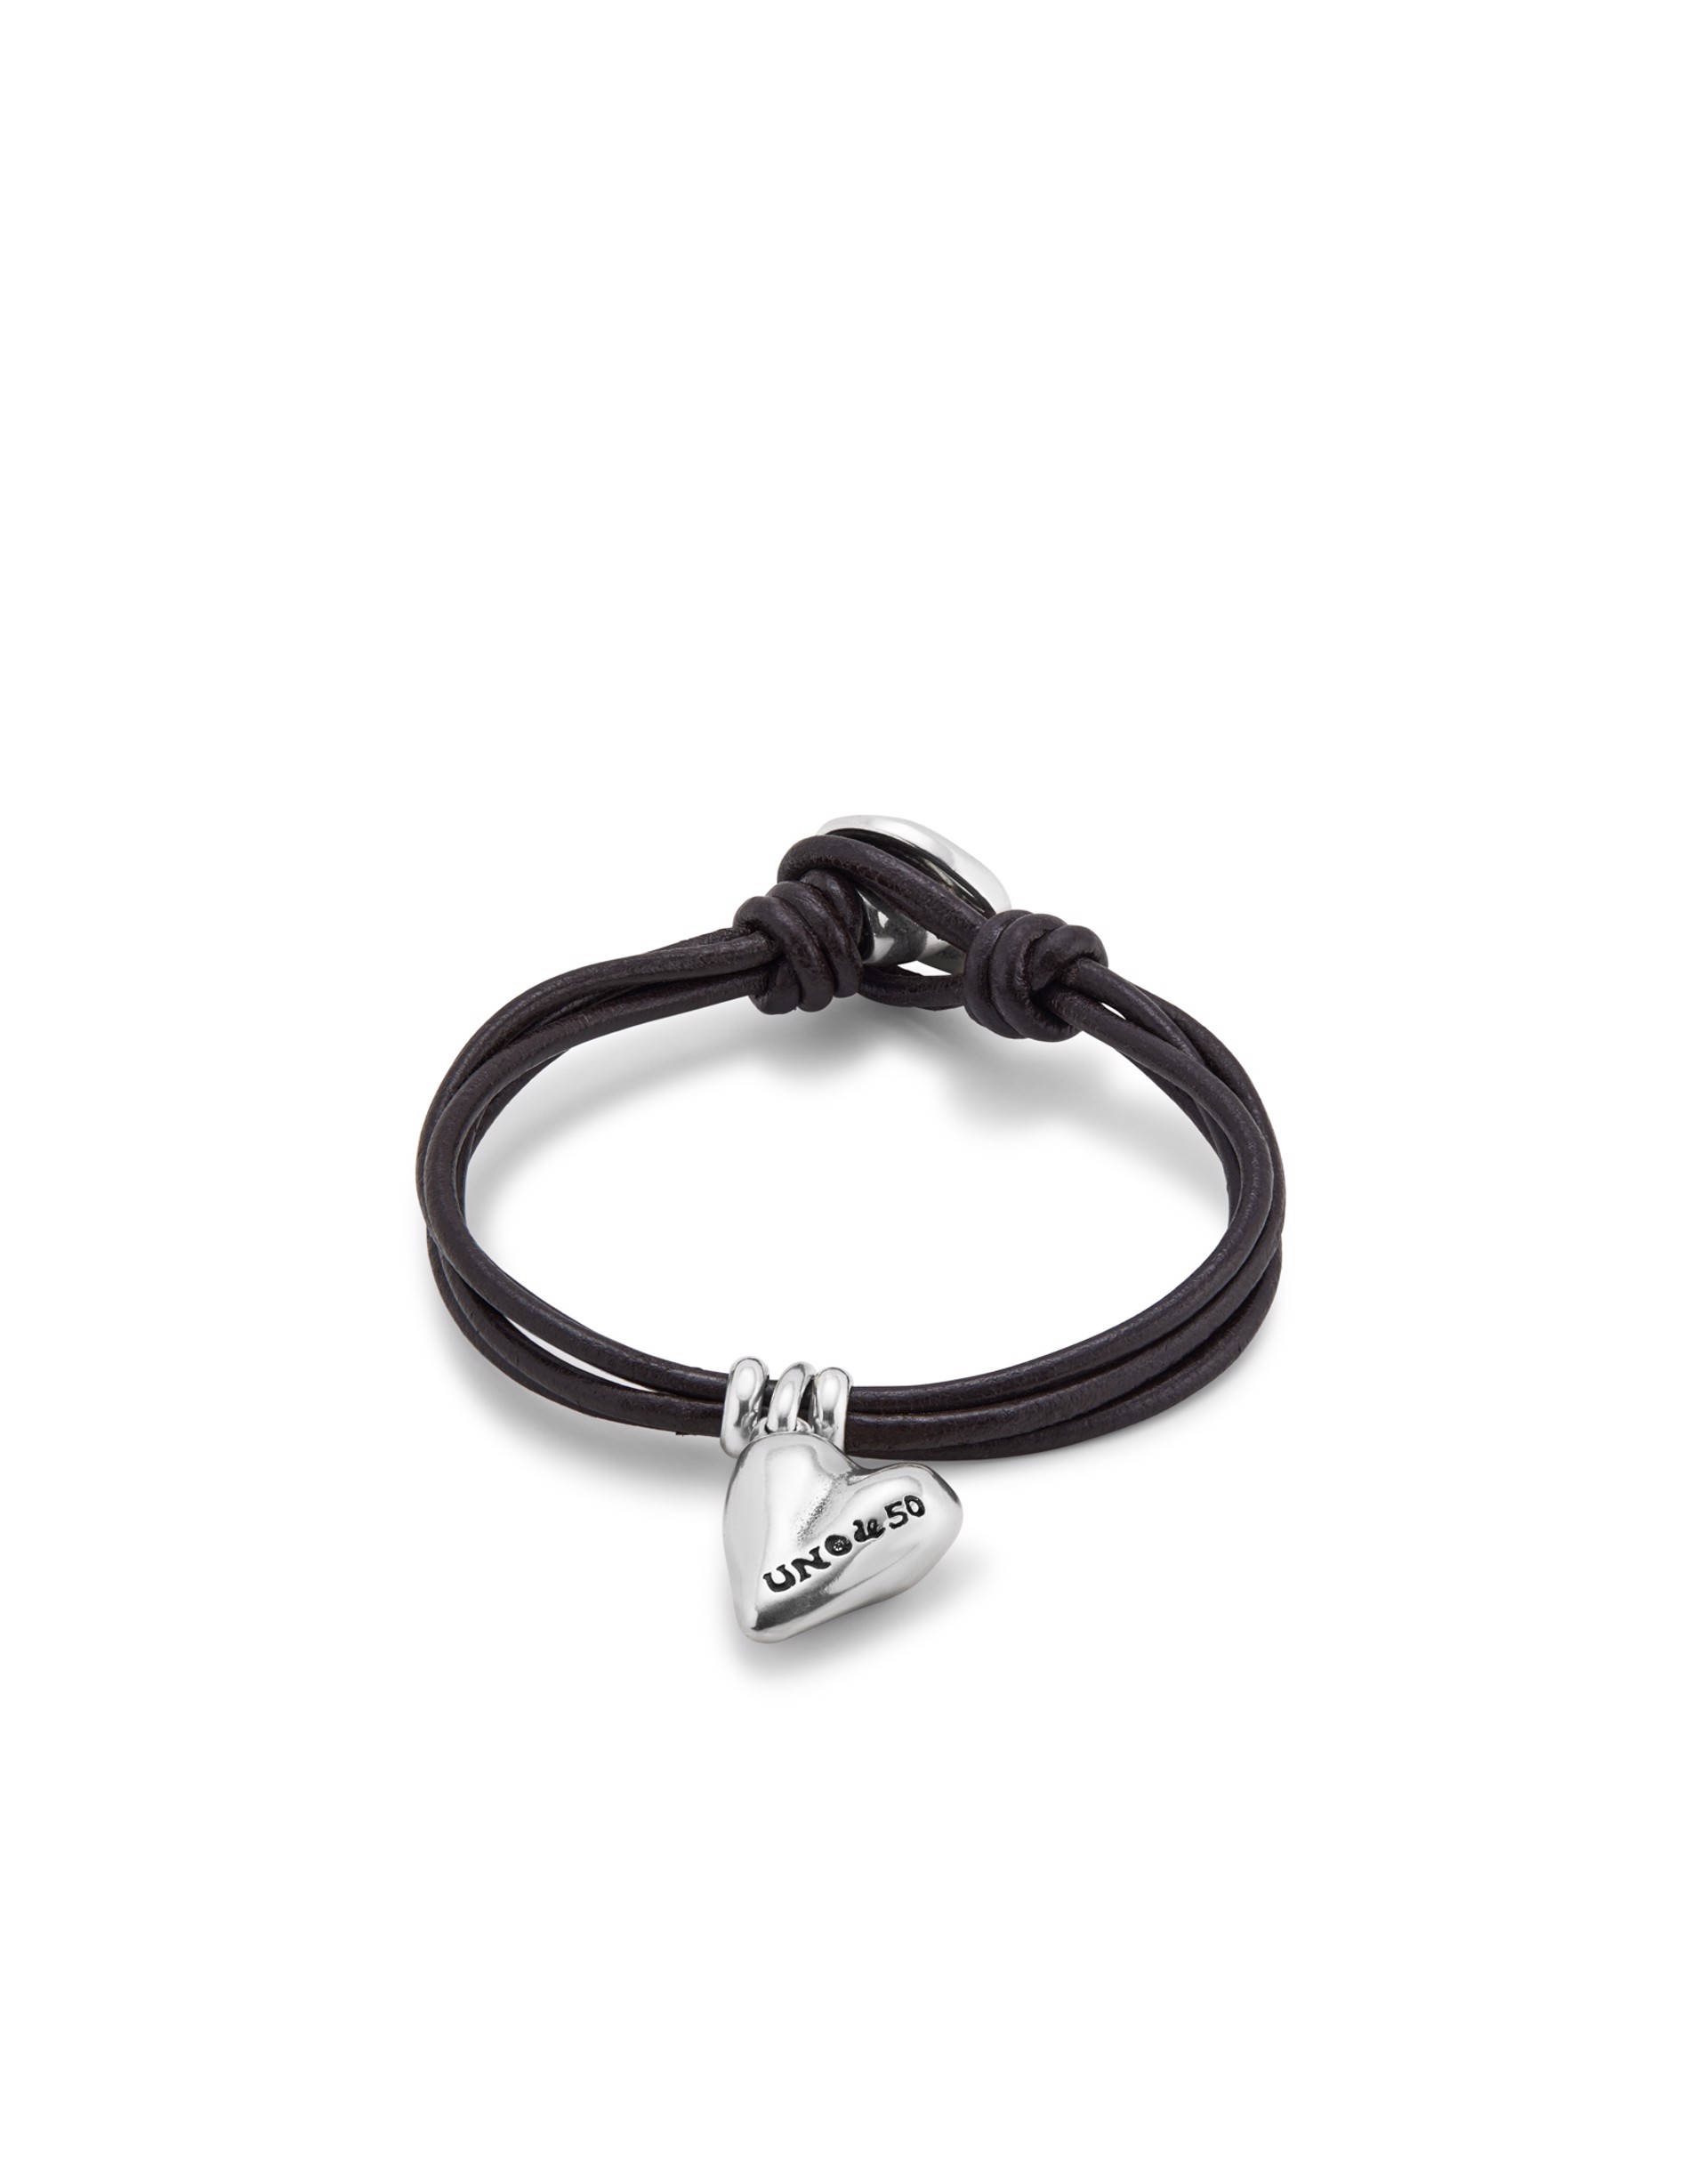 Pretty Love Bracelet by UNO DE 50